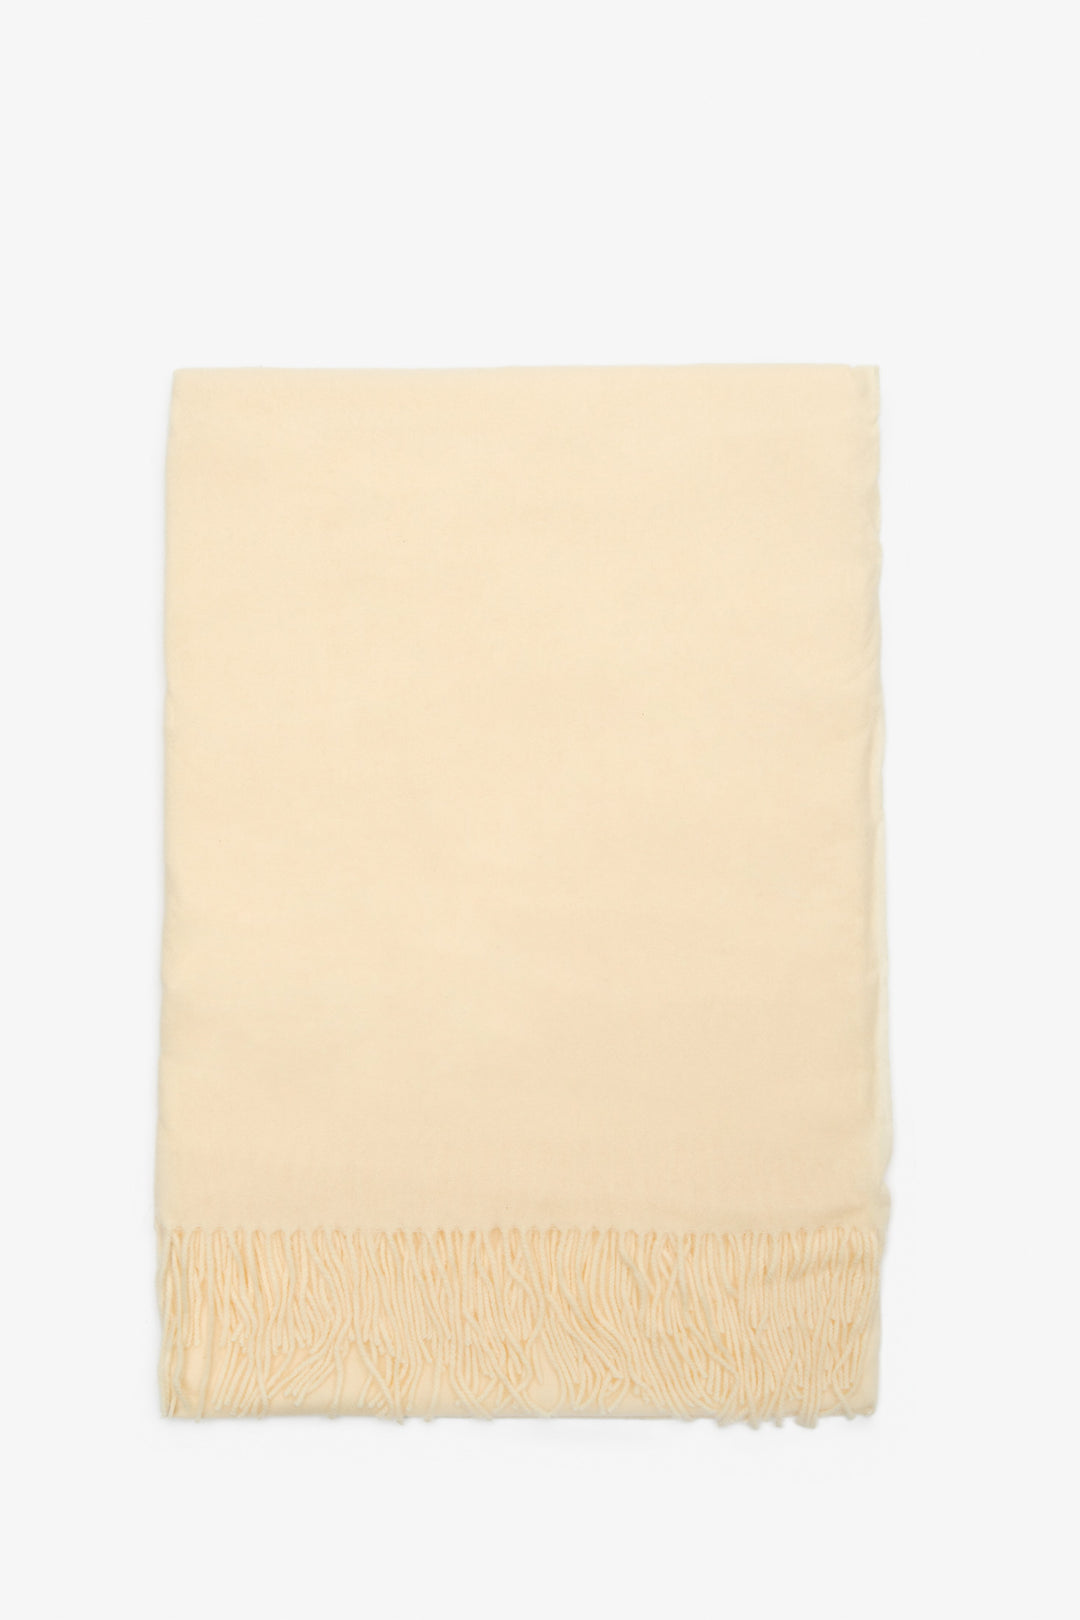 Women's light beige scarf by Estro.